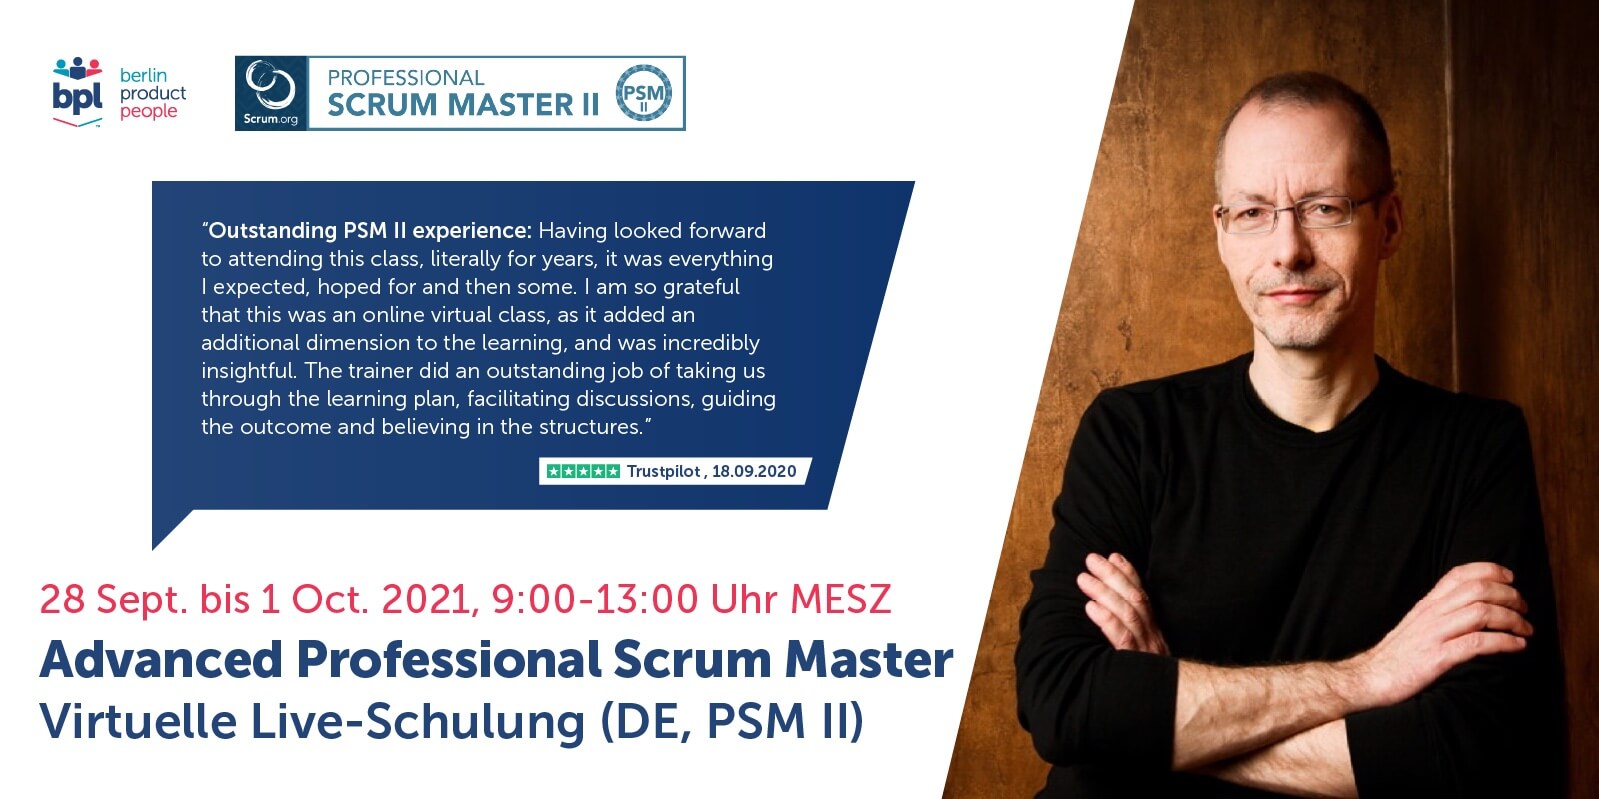 Fortgeschrittenen Professional Scrum Master Online Schulung auf Deutsch mit PSM II Zertifikat — 28.9. bis 1.10.2021